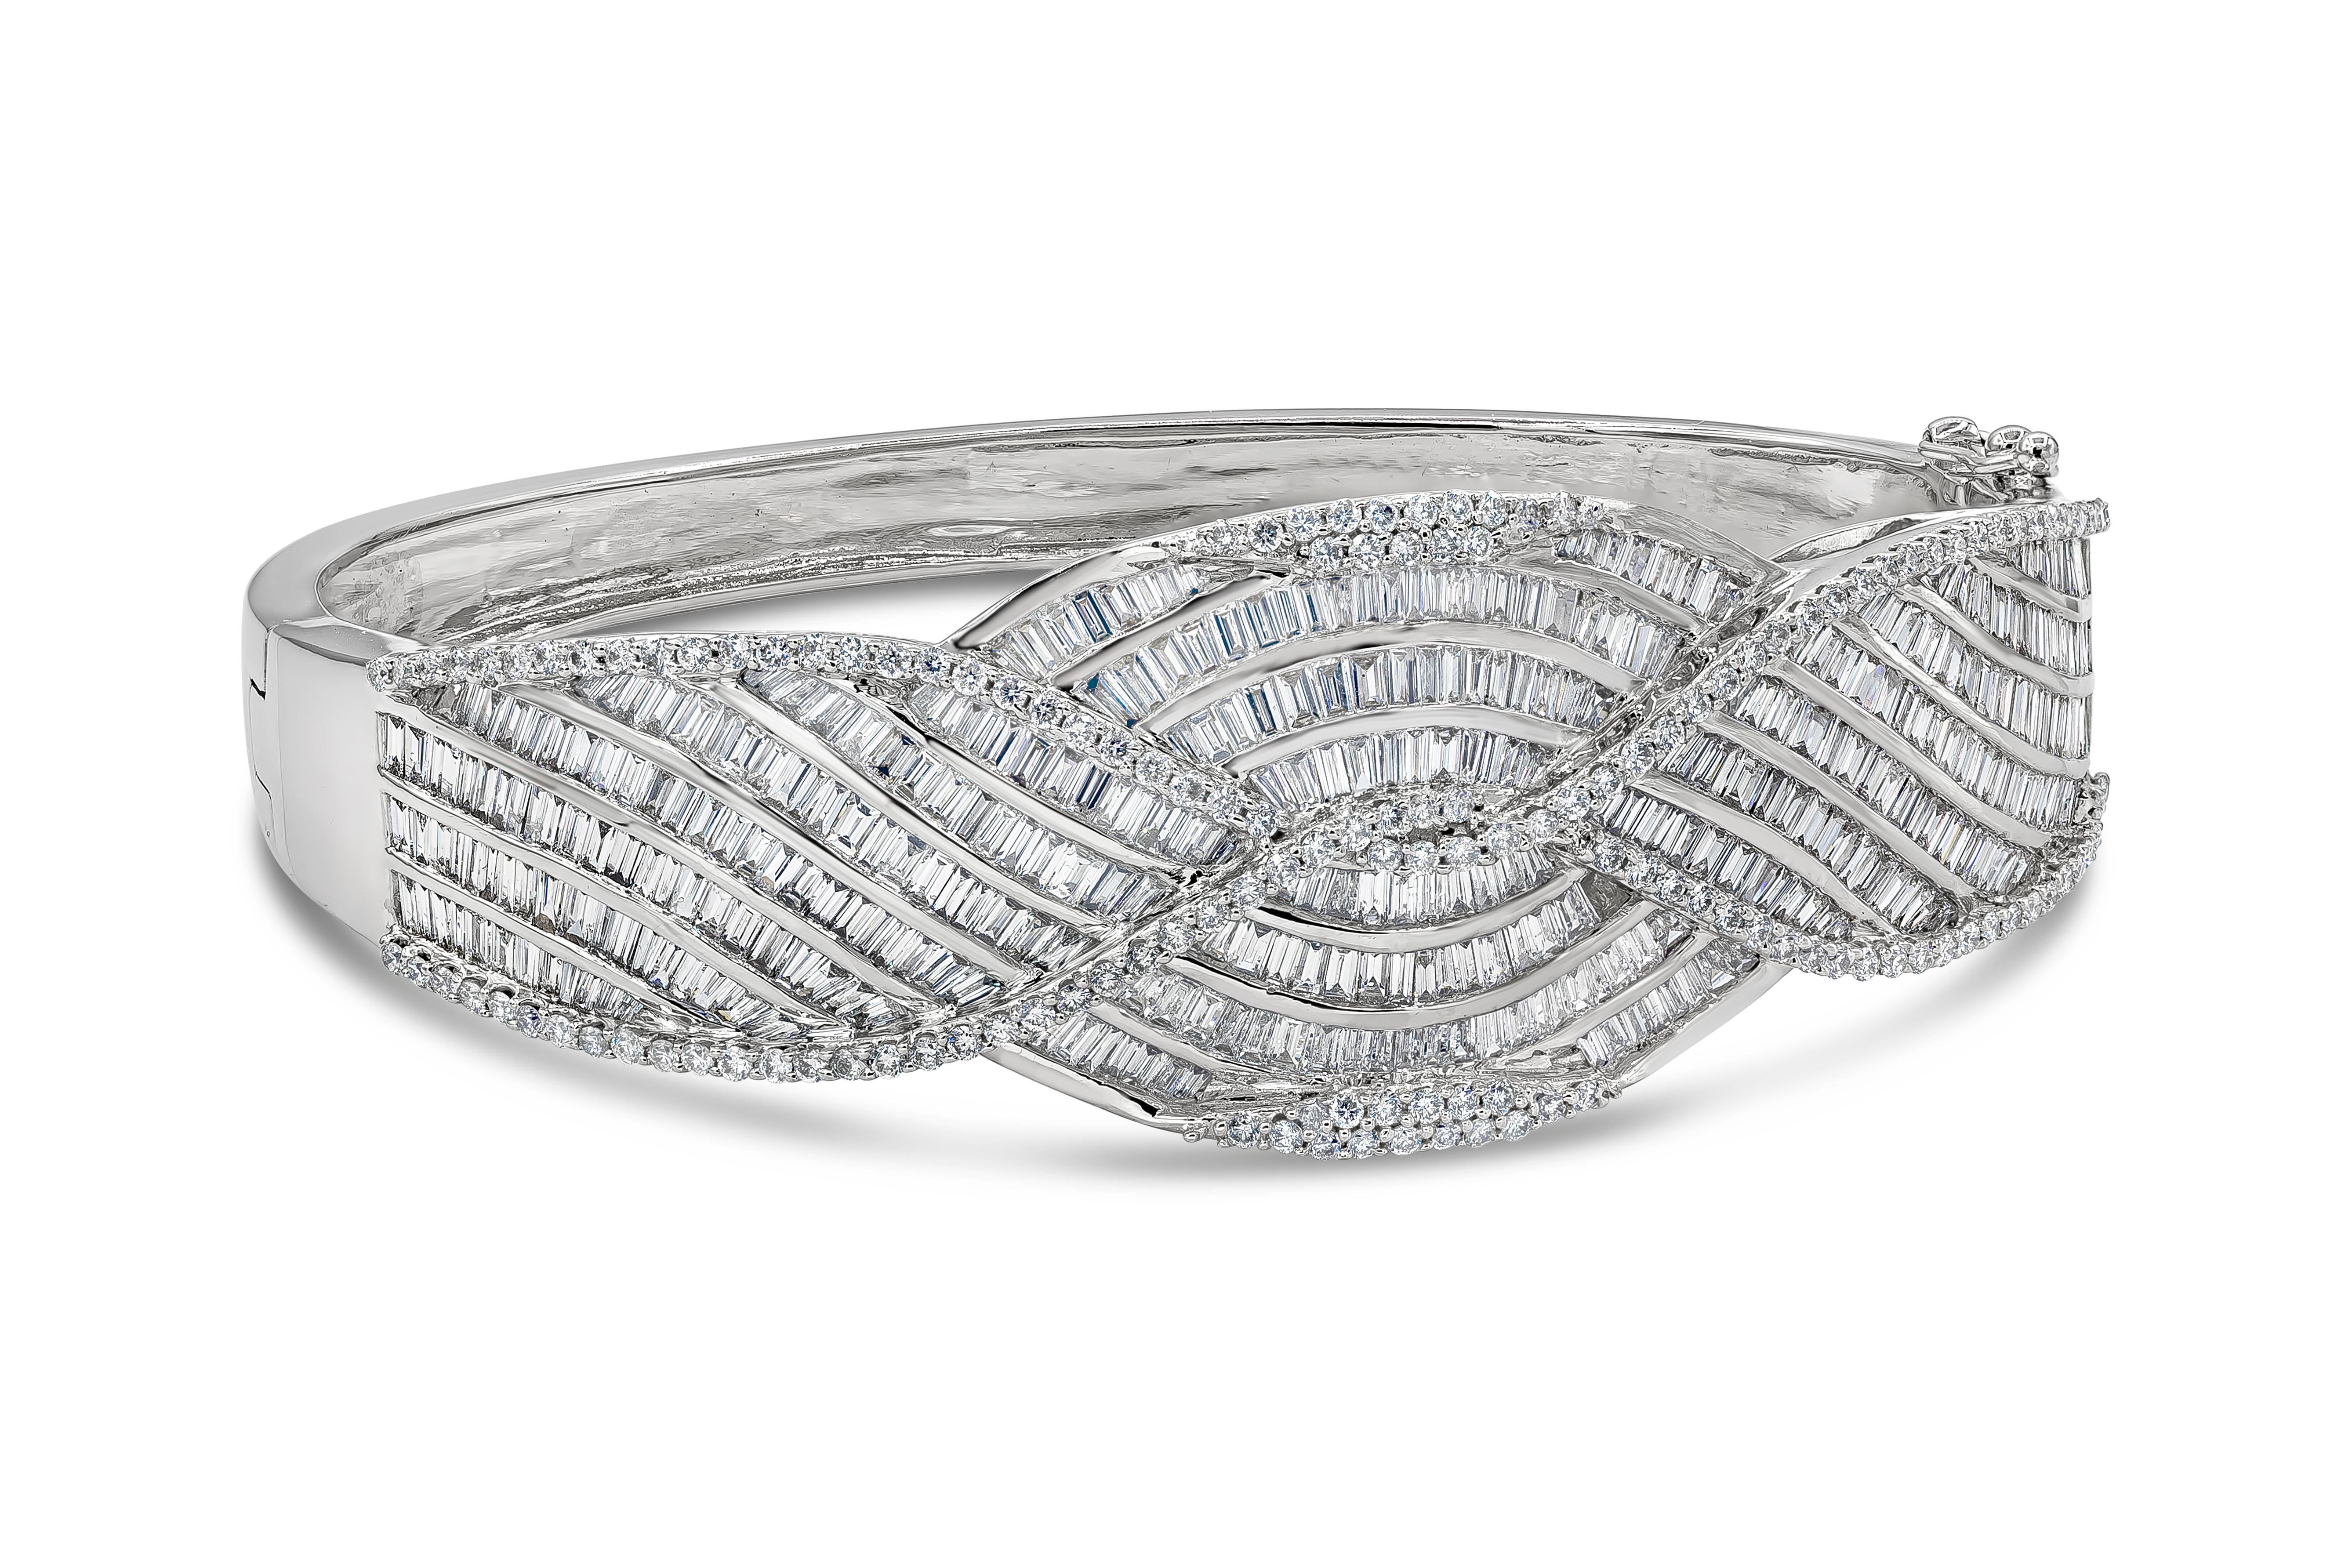 Das exquisite und arbeitsintensive Design zeichnet sich durch eine Gruppe von Baguette-Diamanten mit einem Gesamtgewicht von 11,58 Karat aus, die in einem schrägen Geflecht gefasst und mit runden Brillanten mit einem Gesamtgewicht von 1,45 Karat